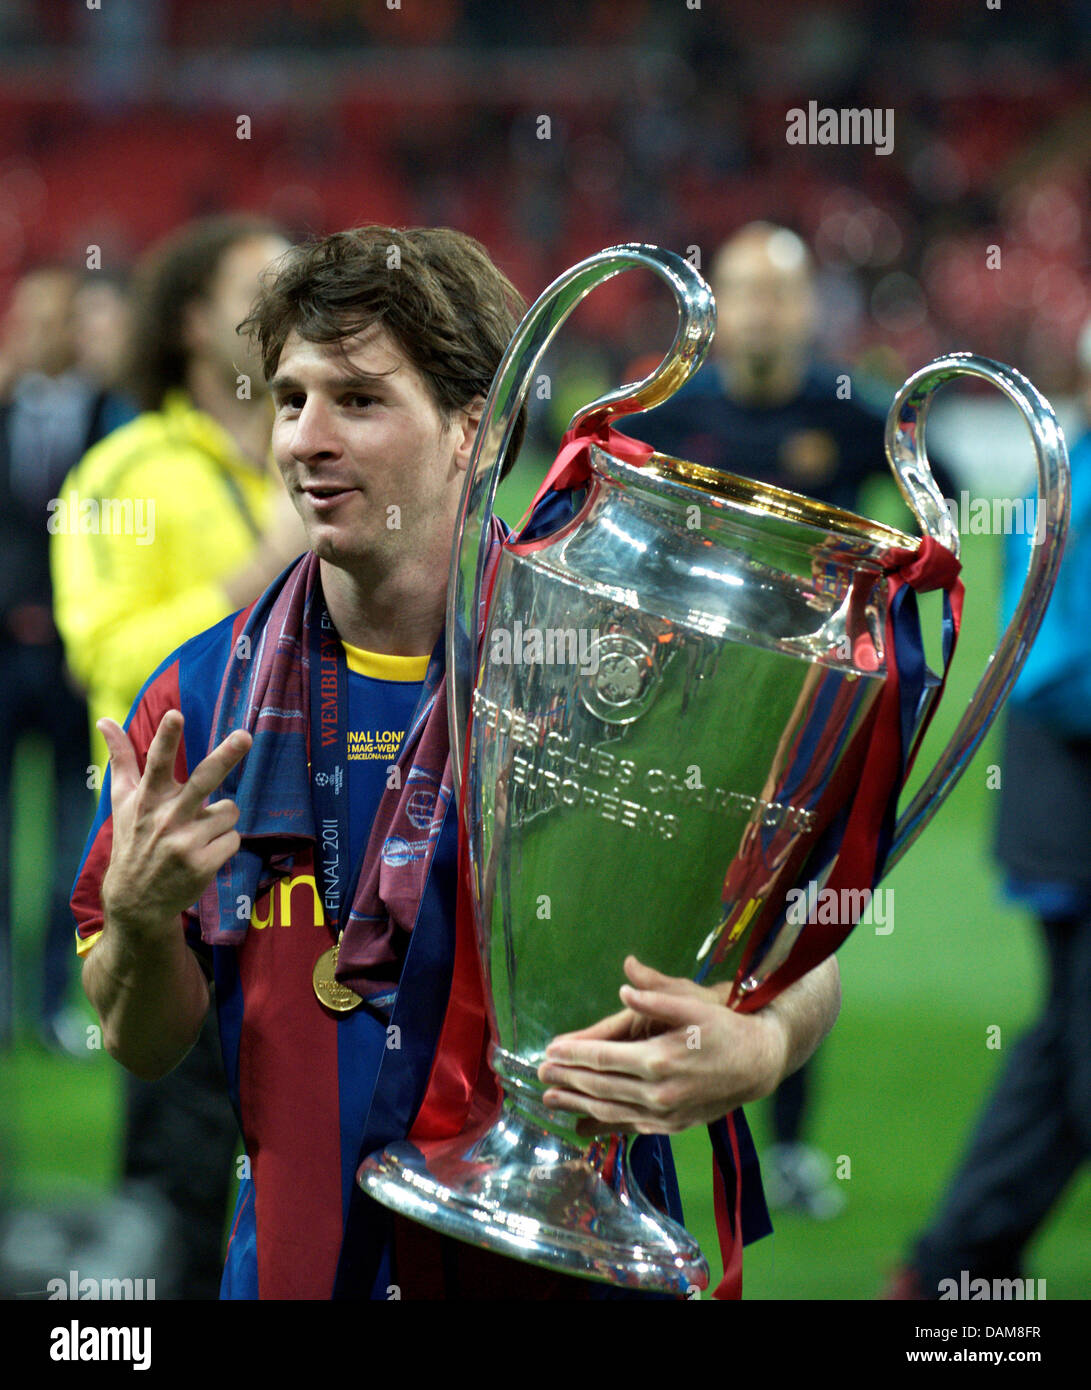 La Barcelone Lionel Messi célèbre avec le trophée de la Ligue des Champions  après la finale de la Ligue des Champions entre le FC Barcelone et  Manchester United au stade de Wembley,